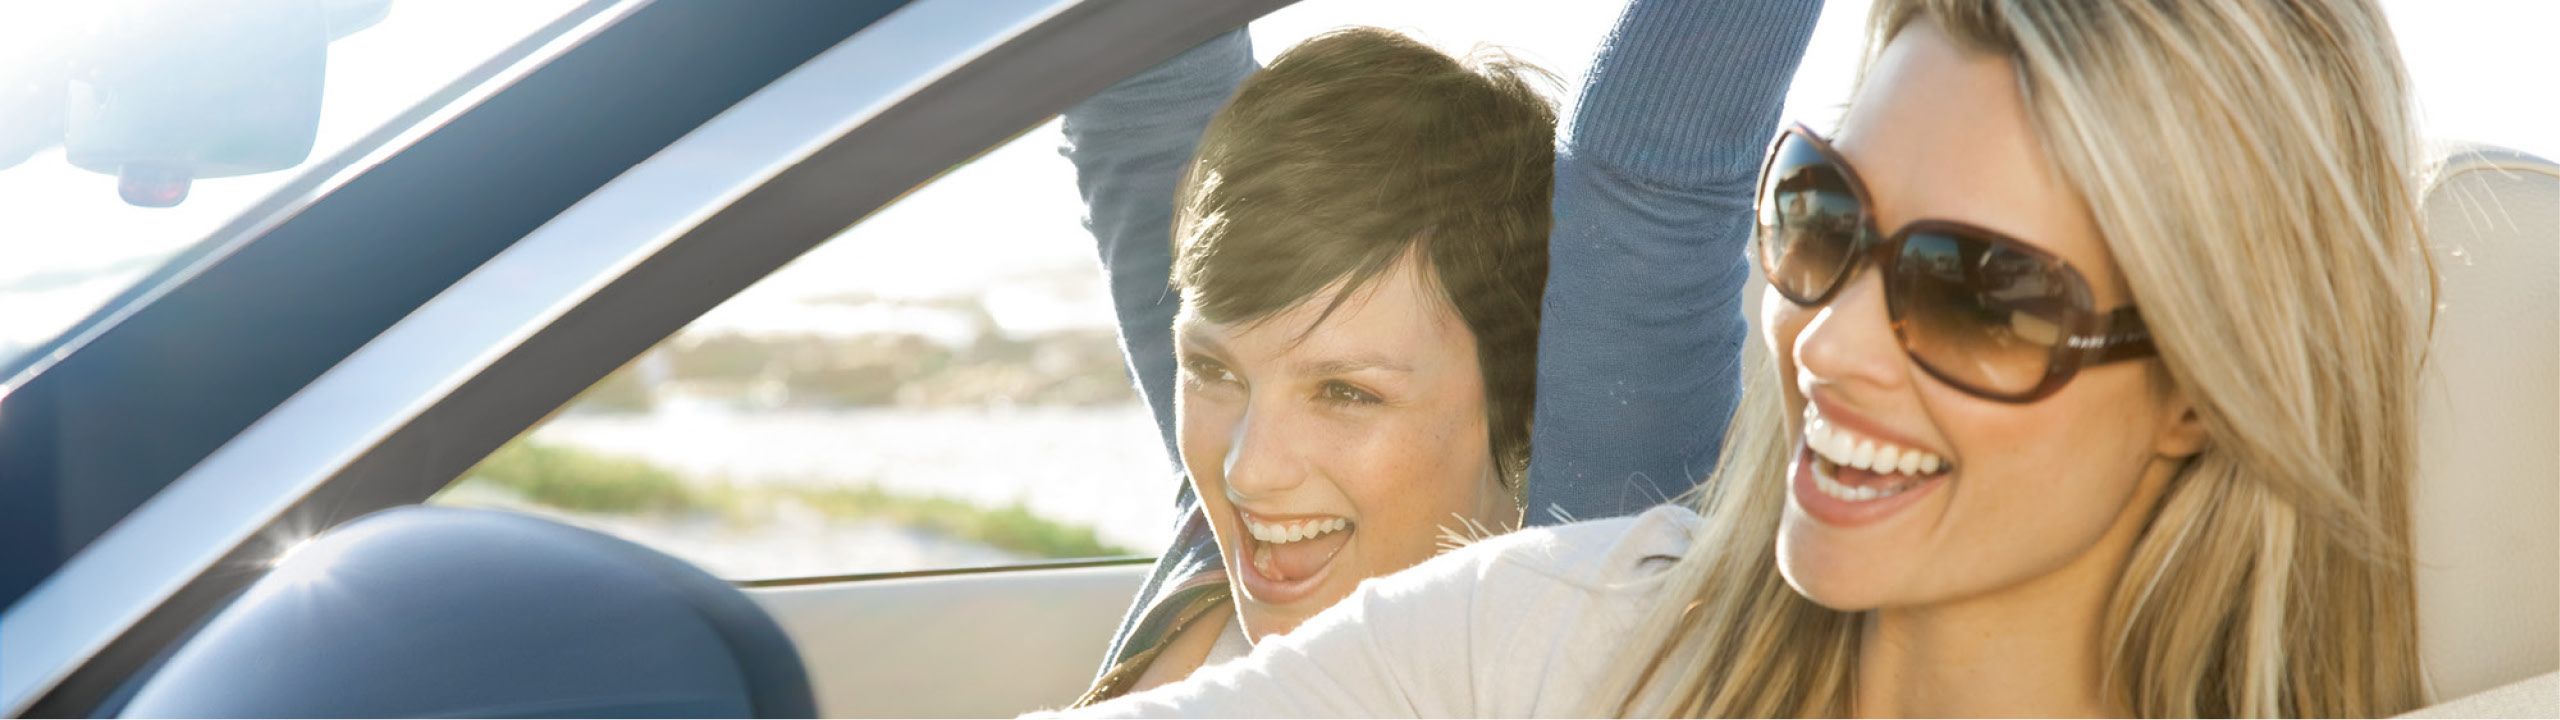 Zwei Frauen sitzen im Cabrio und lachen